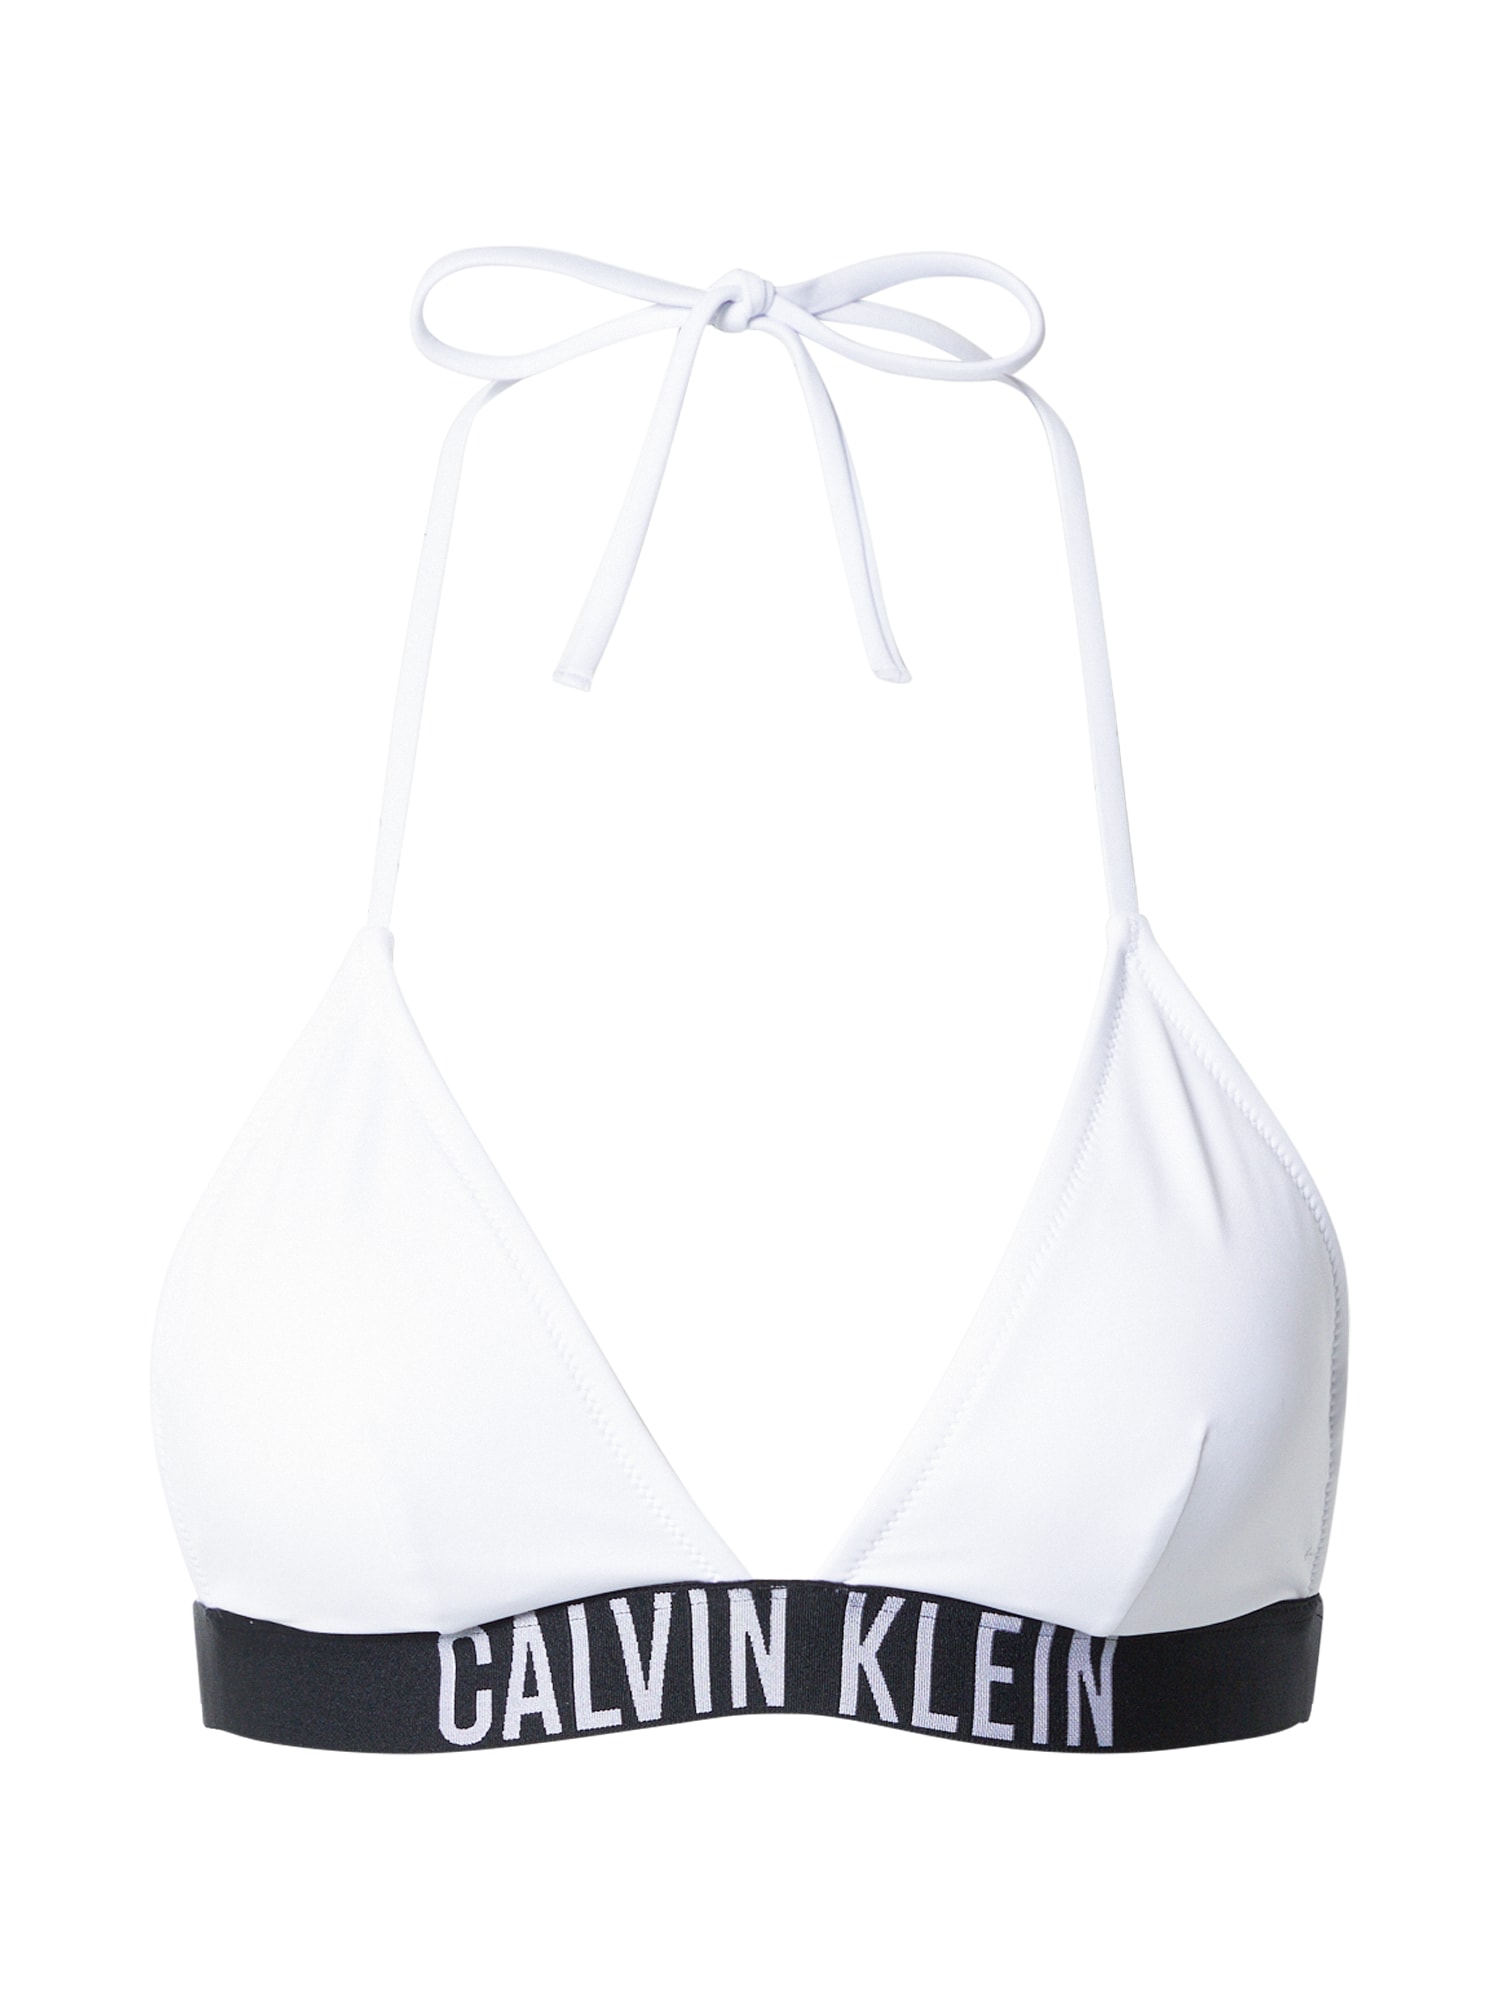 Bikinový top čierna biela Calvin Klein Swimwear